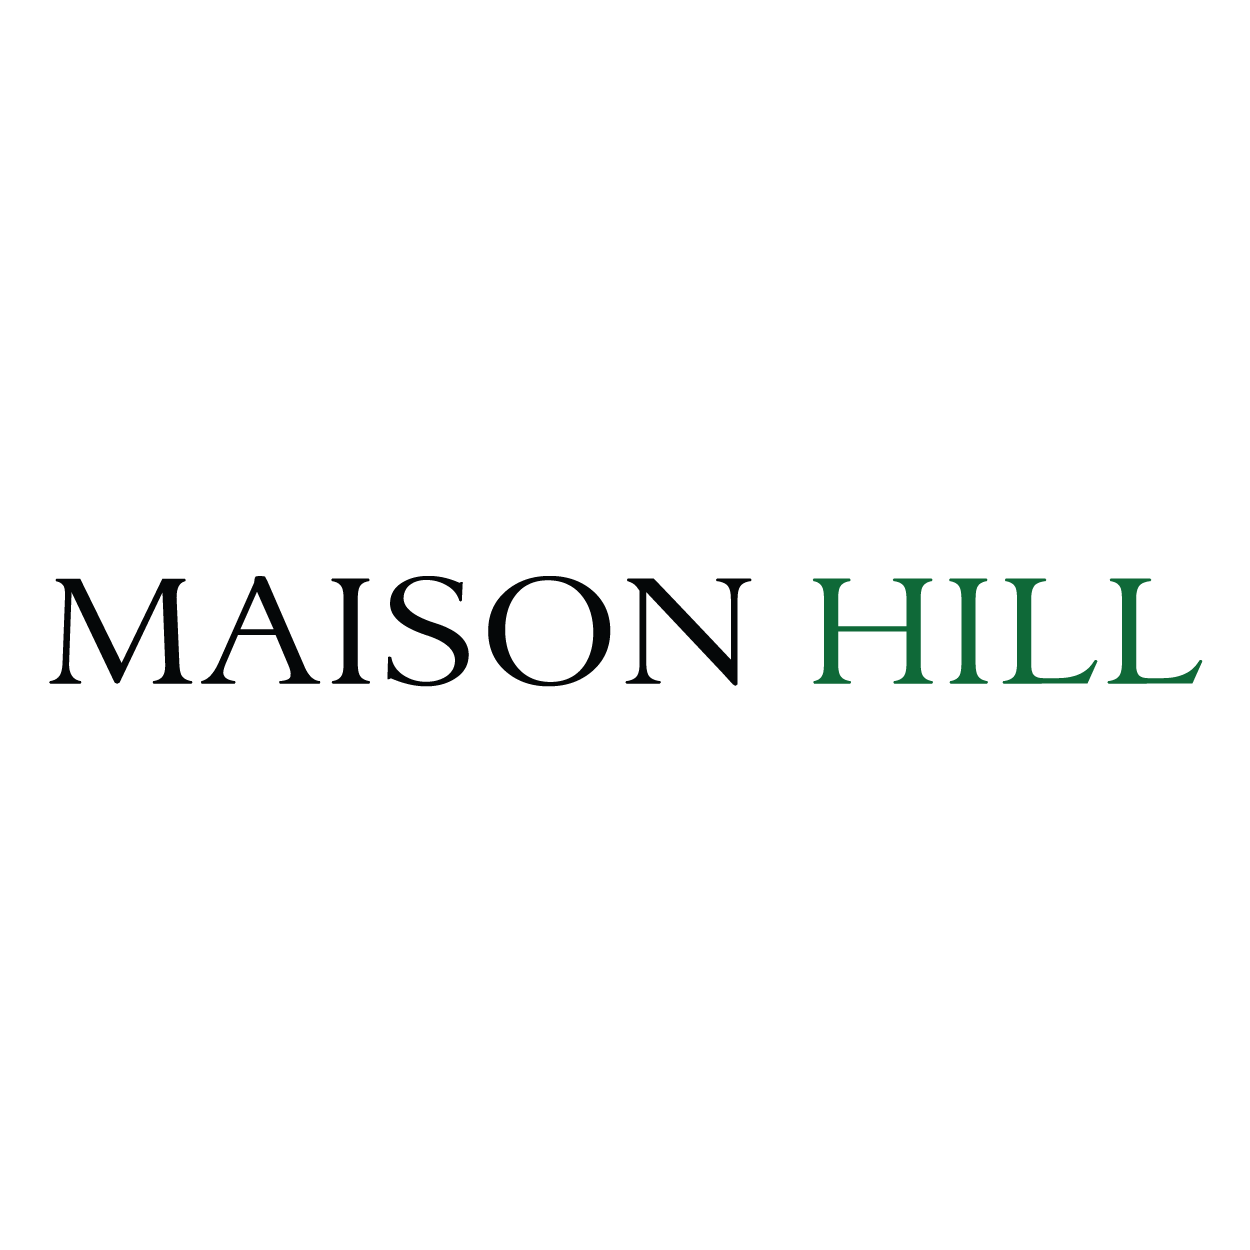 Maison Hill